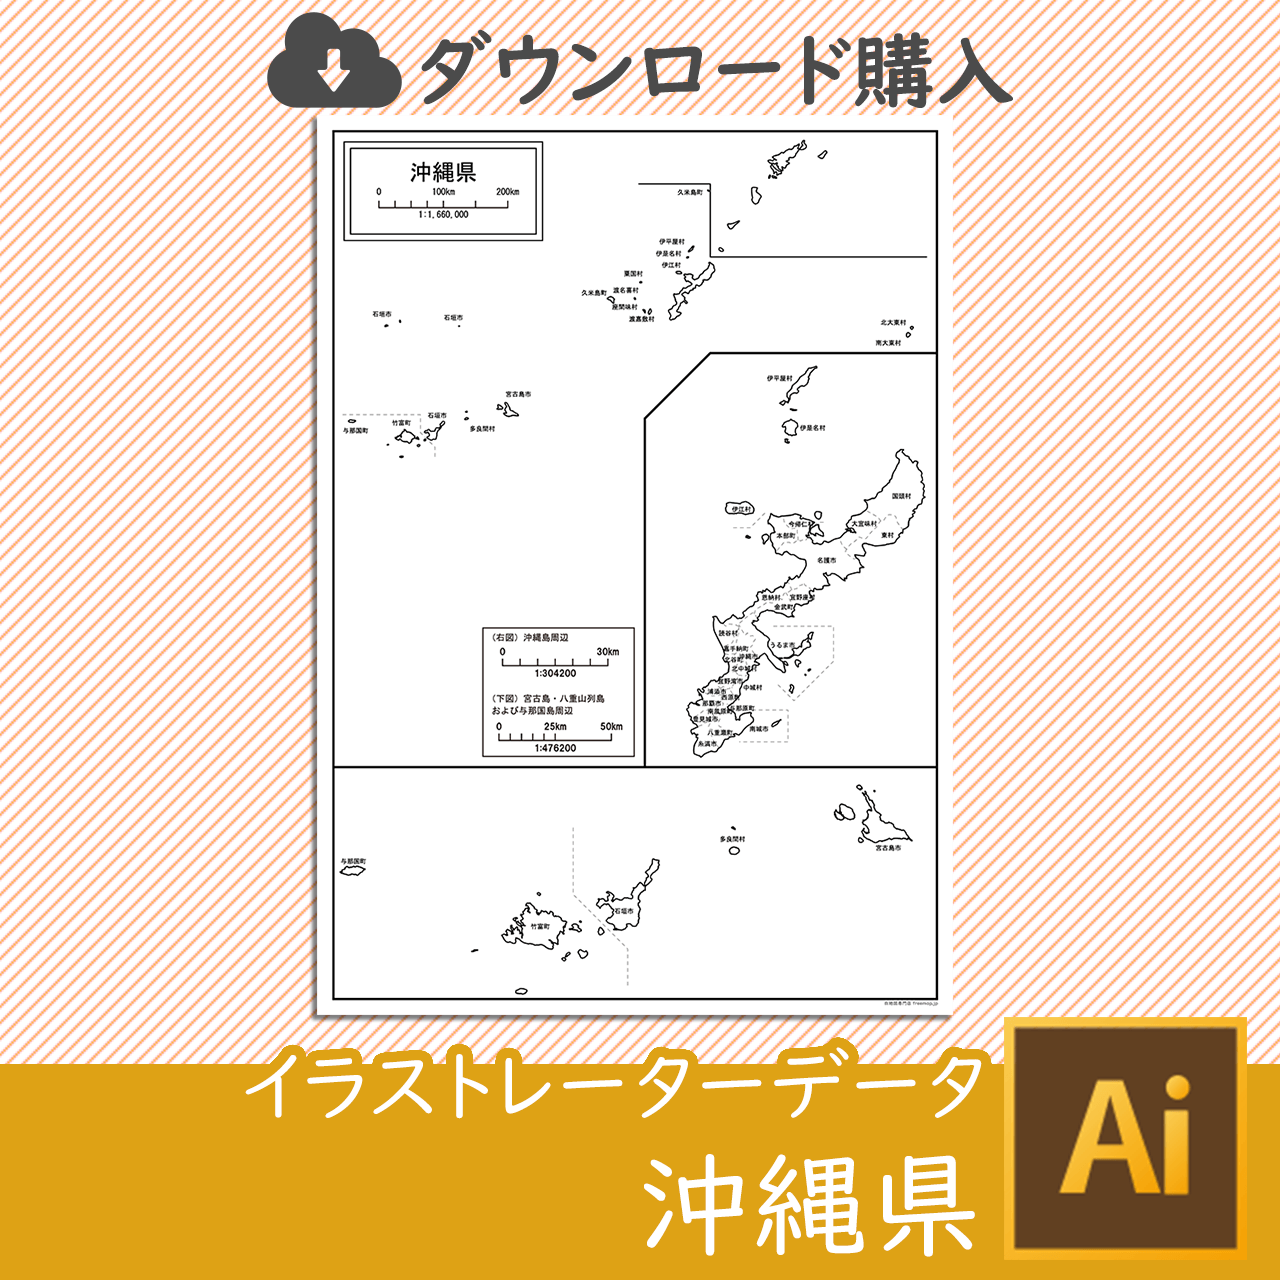 沖縄県の白地図データのサムネイル画像